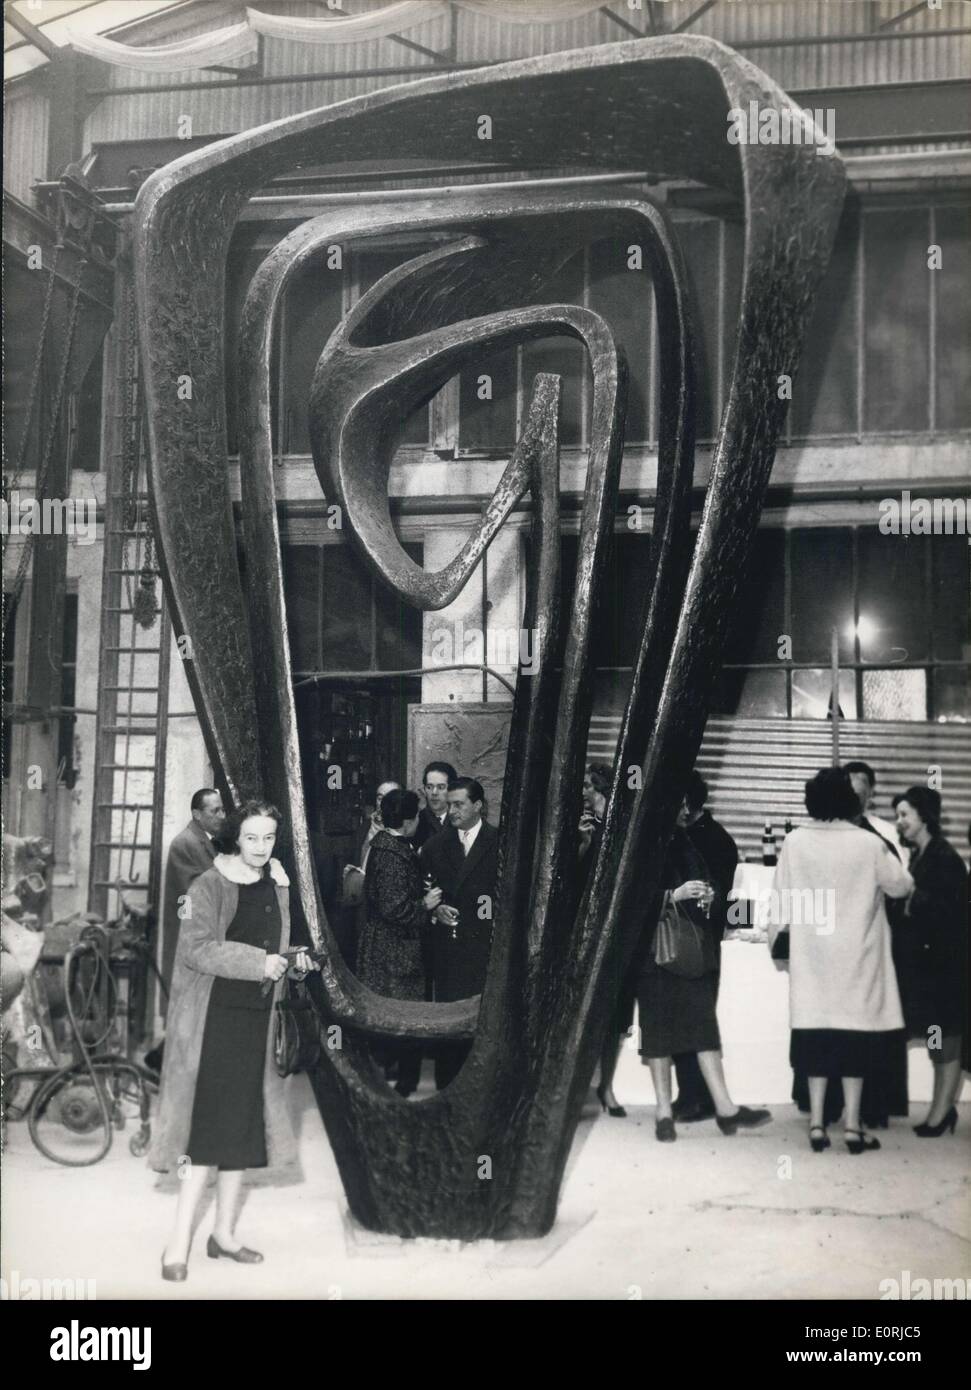 Nov. 12, 1959 - Barbara Hepworth presenta il suo ultimo lavoro ''Meridian'': Barbara Hepworth, e ben noto scultrice britannica che ha vinto un premio importante a Sao Paolo mostra internazionale, ha presentato il suo ultimo lavoro ''Meridian'' appena compledted a M. Susses' fonderia a Arcueil, nei pressi di Parigi. La scultura Meridian è stato commissionato come una parte della concezione architettonica di uno di Londra Ufficio importanti sviluppi. Pesa 4 tonnellate ed è il più grande mai progettato da Miss Hepworth. Mostra fotografica di Miss Hepworth prima della sua scultura. Foto Stock